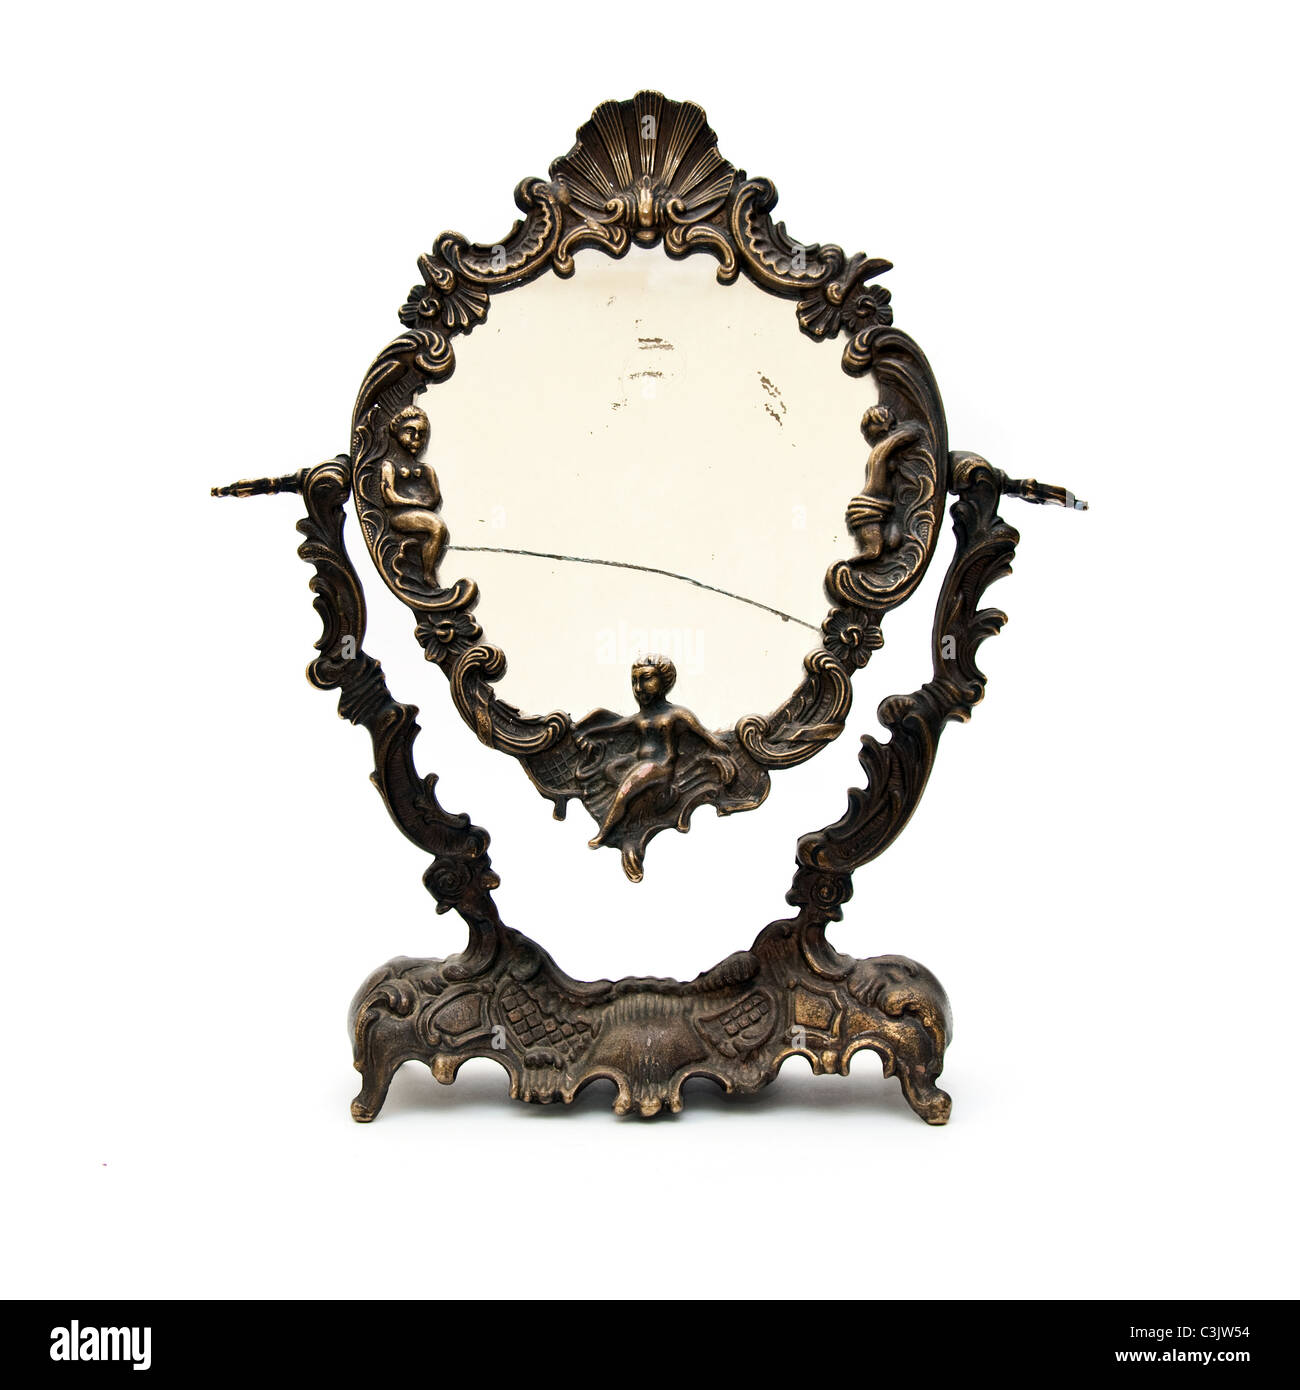 Vieux, obsolète casse vintage miroir sur un fond blanc avec ombre douce Banque D'Images